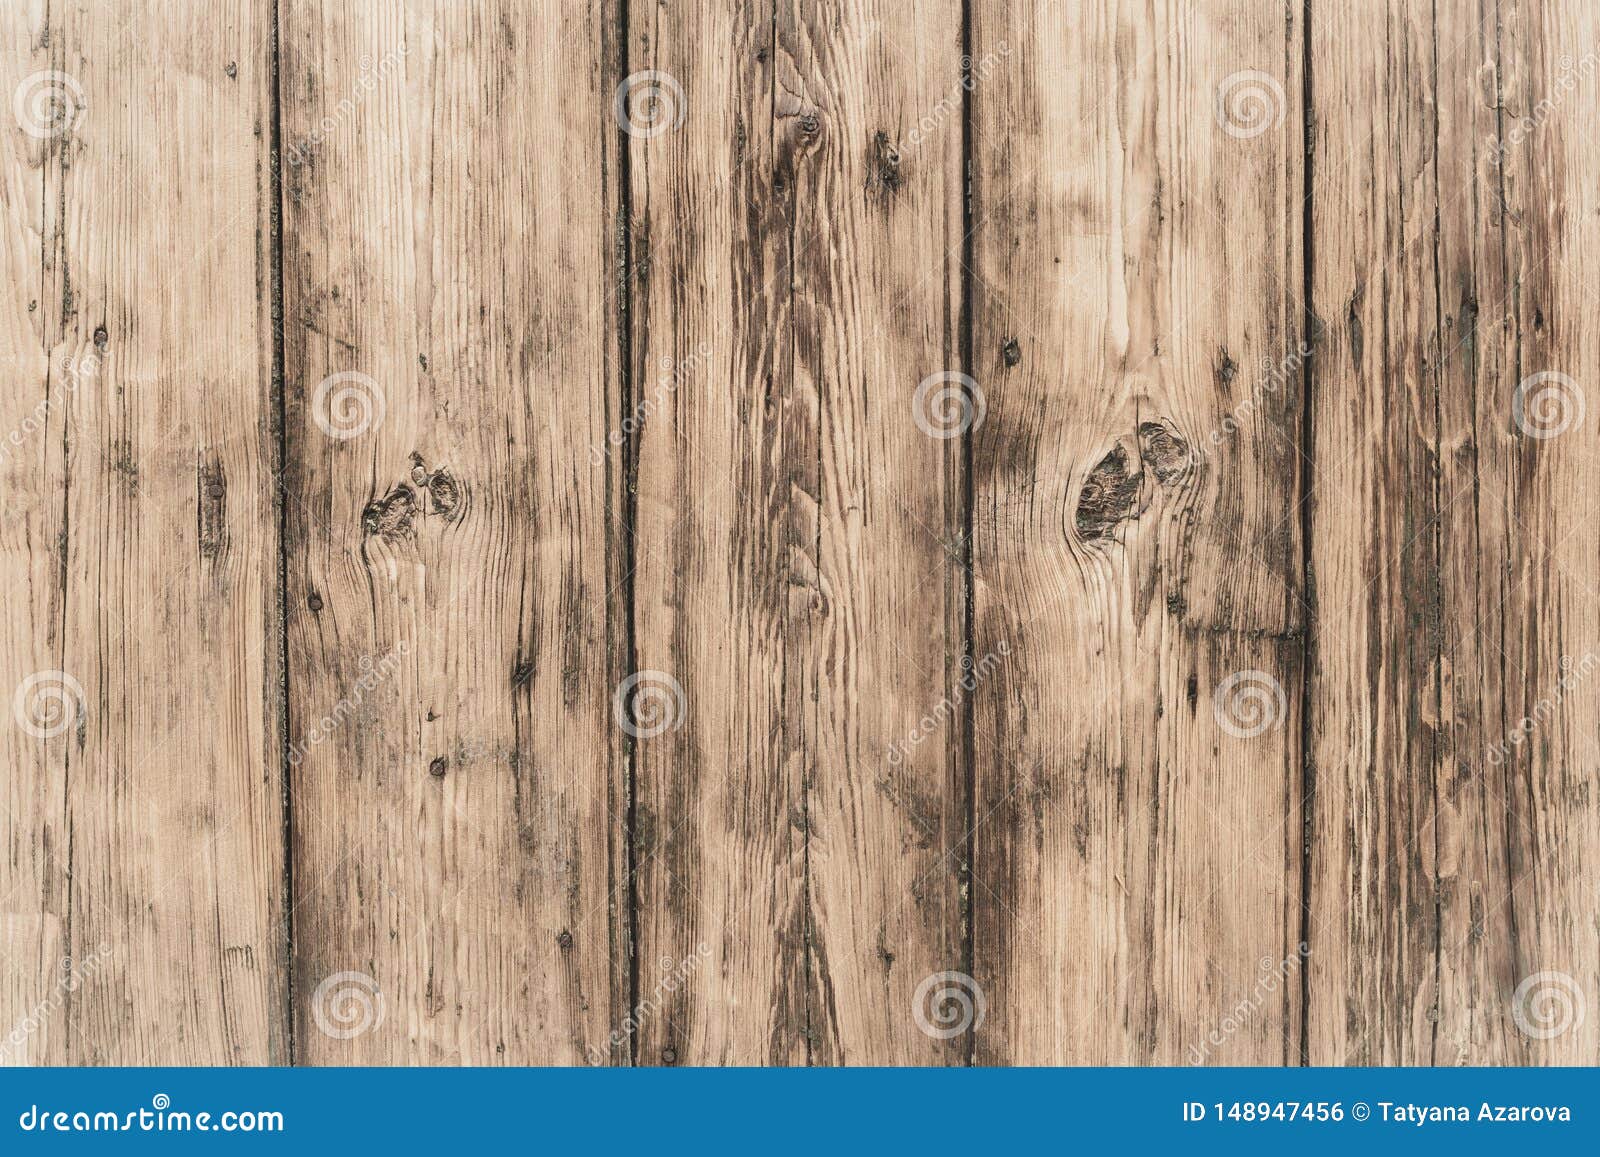 破旧的灰色木板硬木表面减速火箭的橡木肮脏的篱芭桌过时木背景白色木地板纹理grun 库存照片 图片包括有